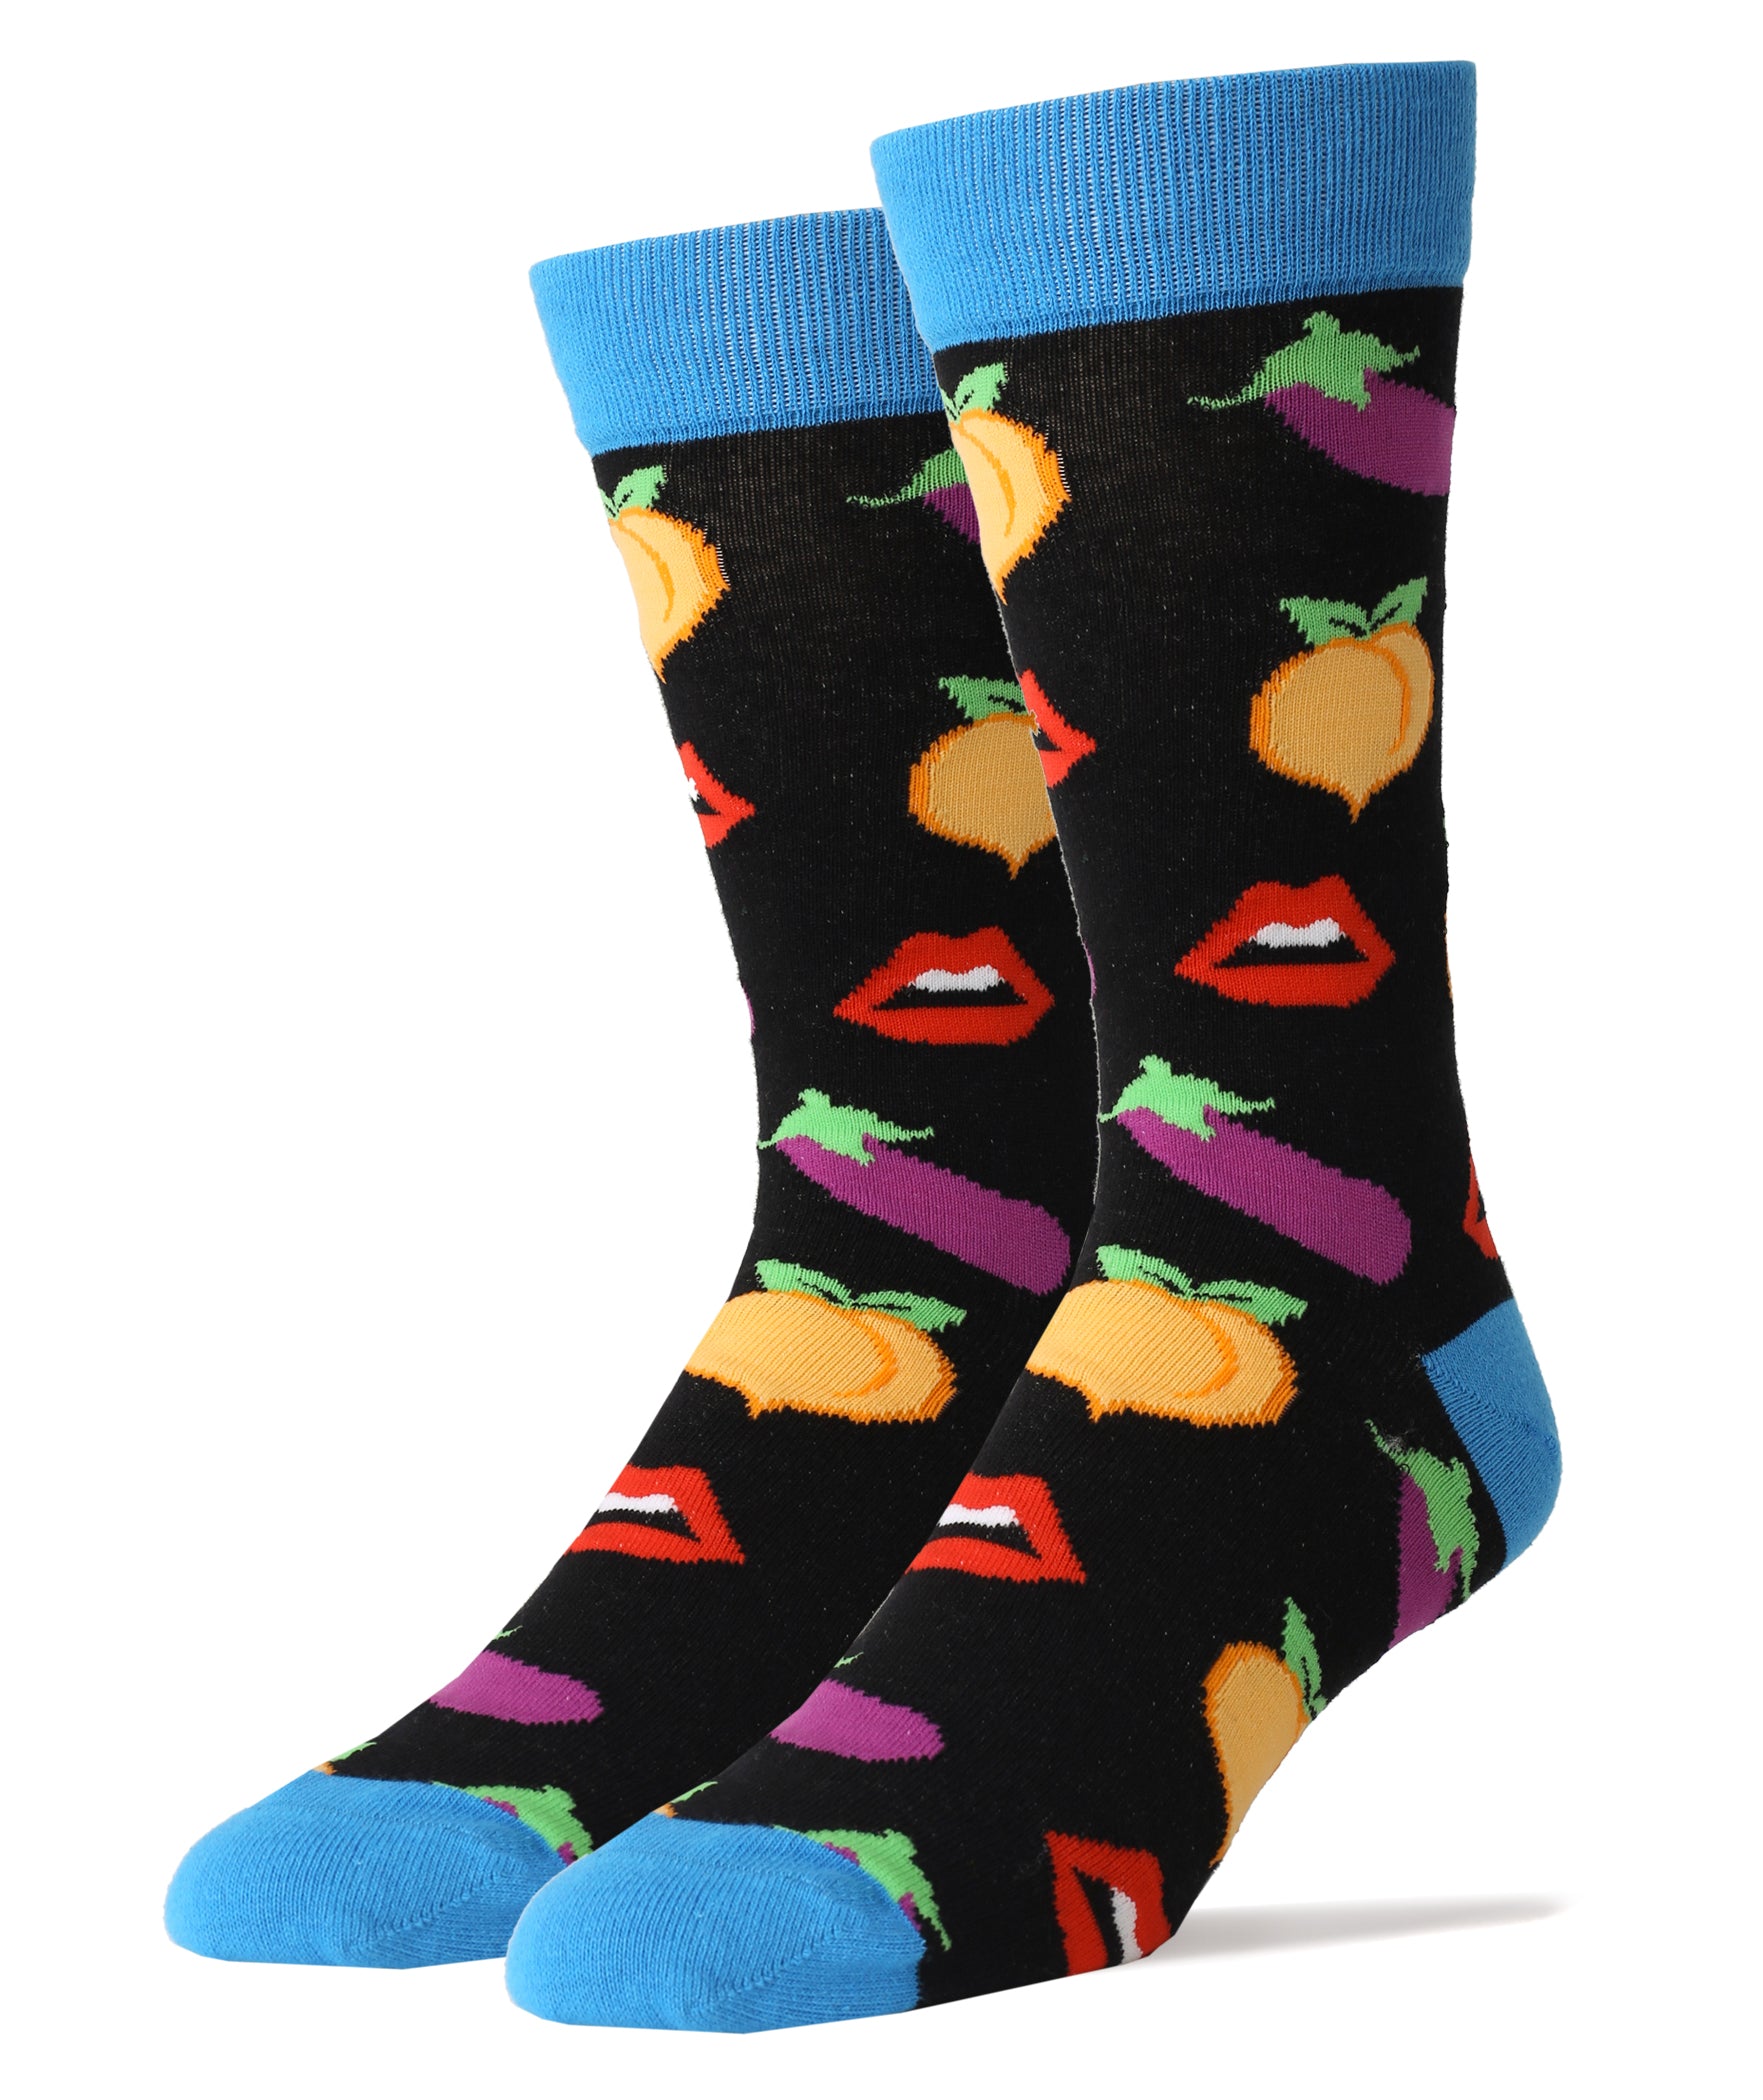 Cheeky Socks | Sassy Crew Socks For Men